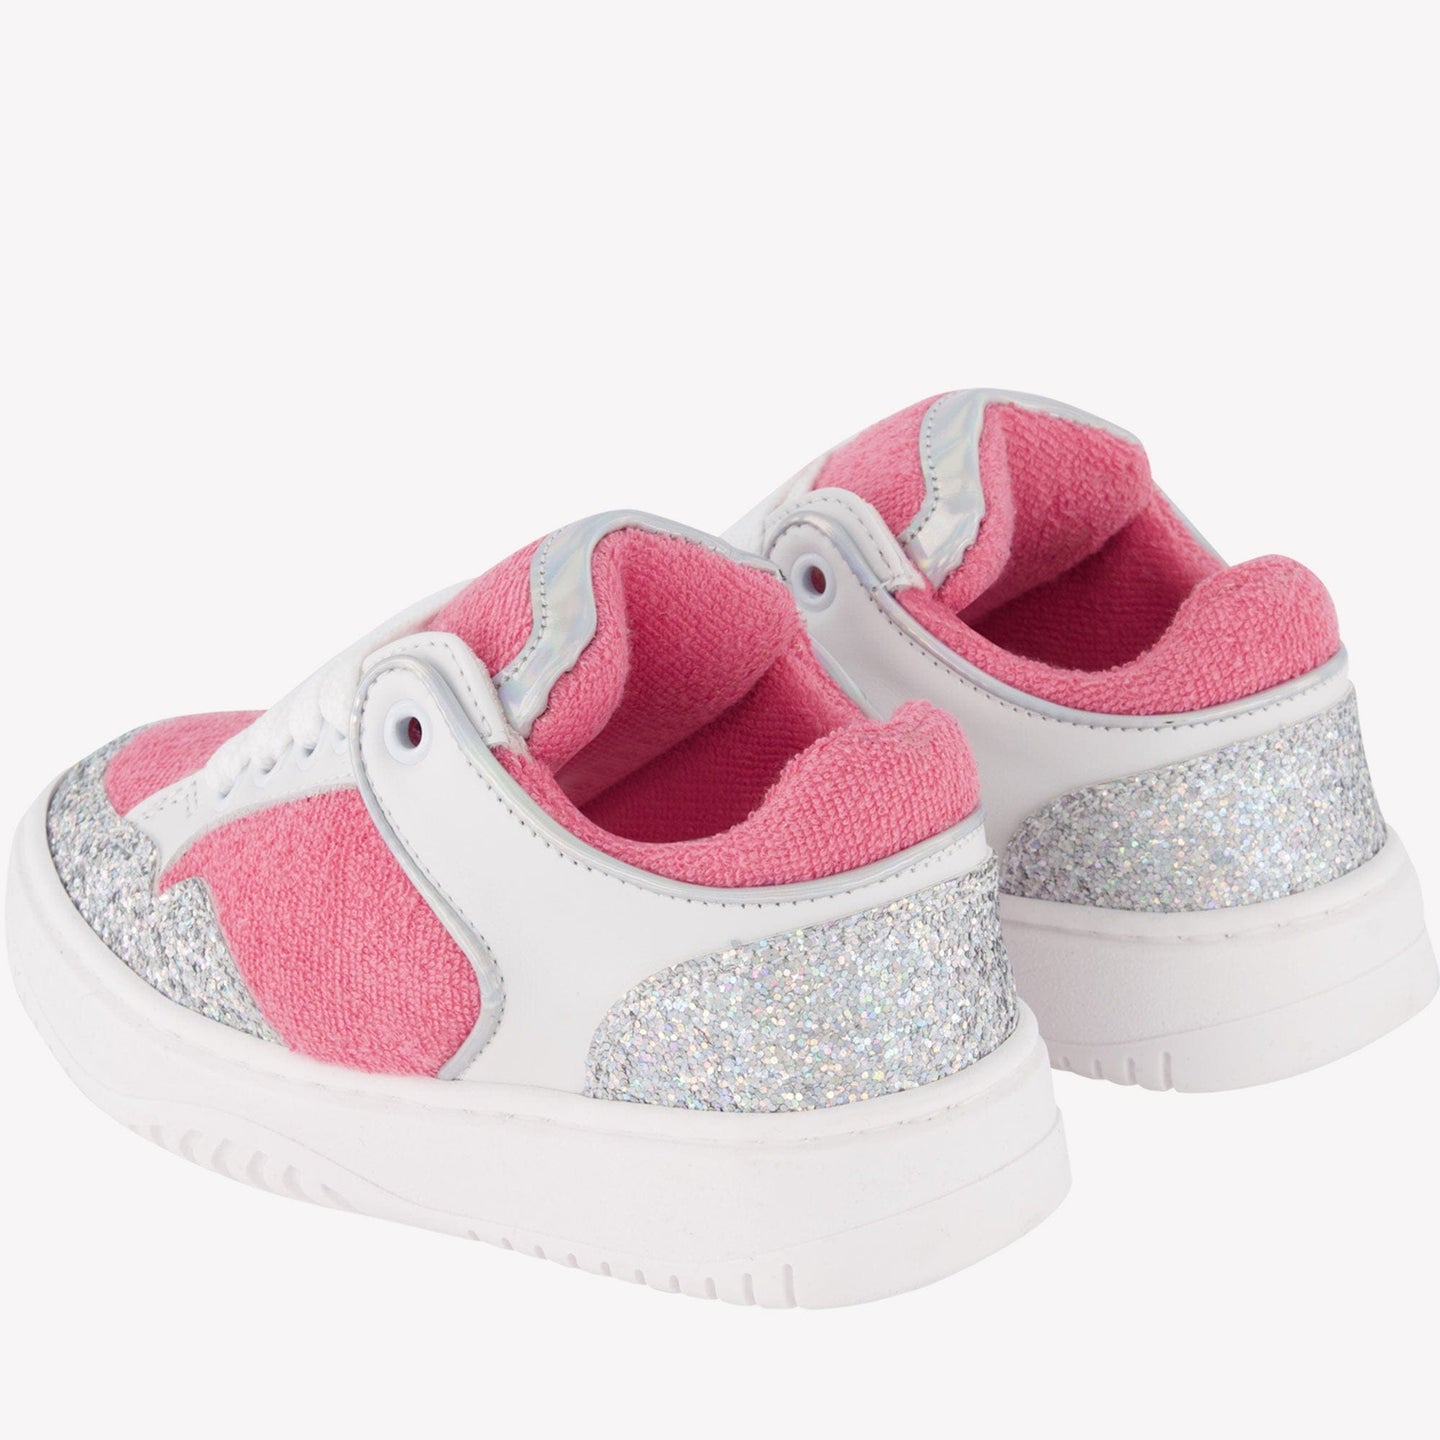 Andrea Montelpare Kinder Meisjes Sneakers Roze 24